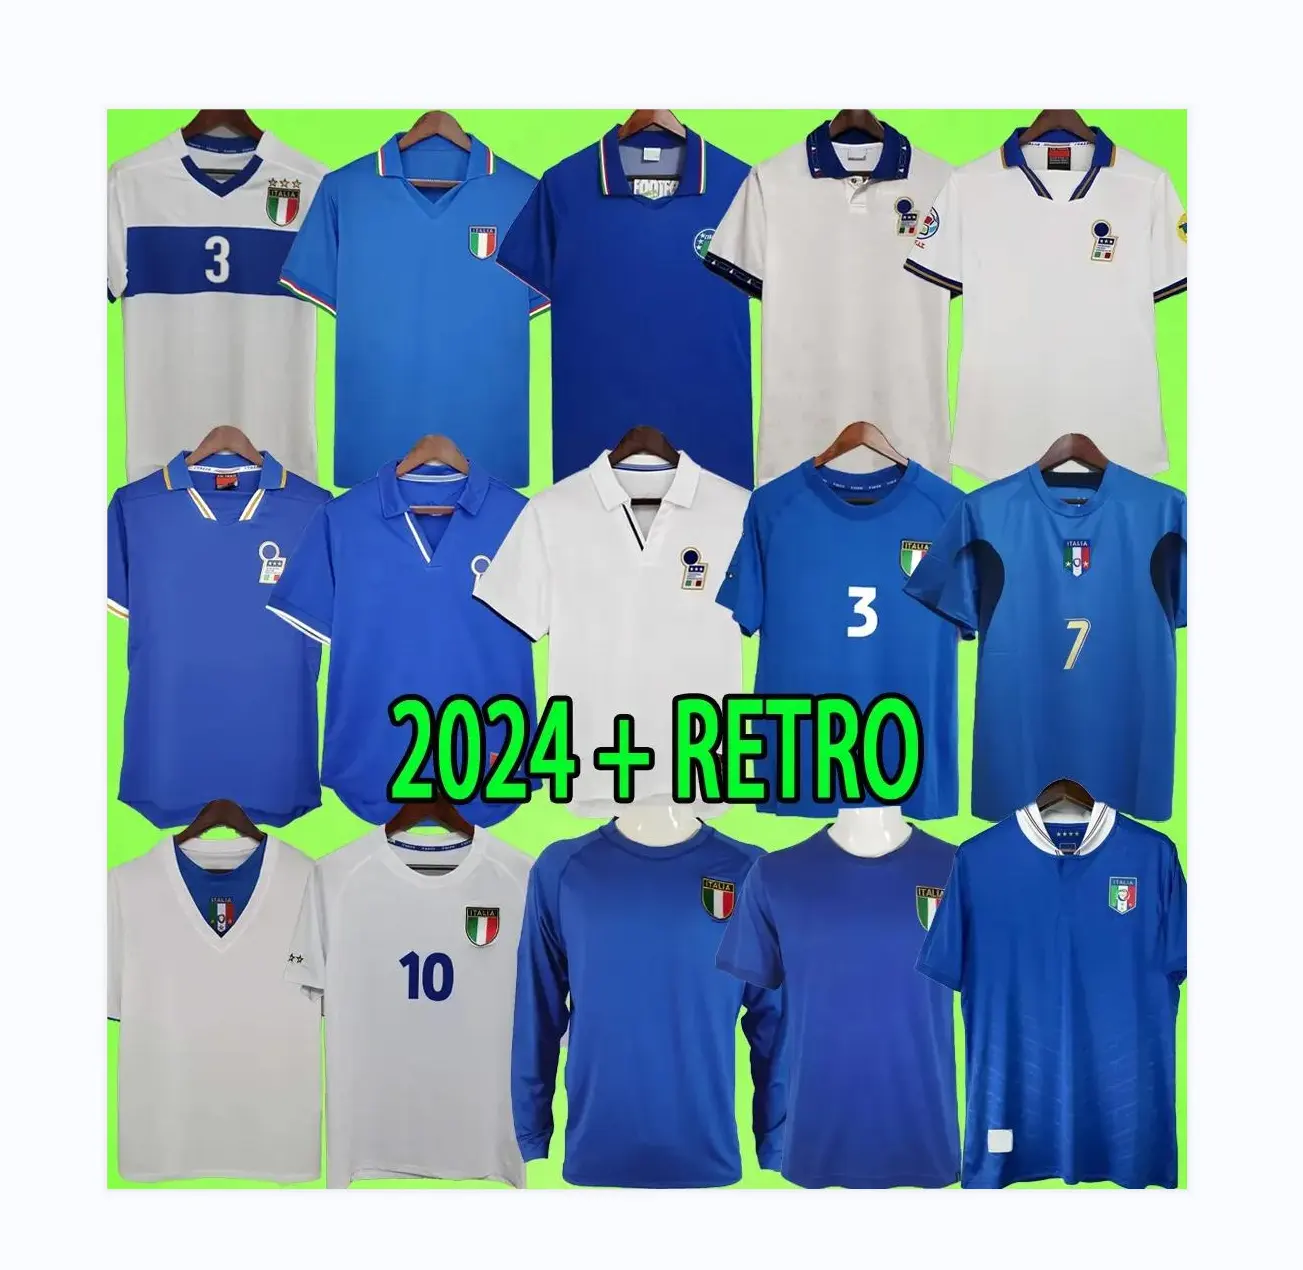 Retro อิตาลีเสื้อฟุตบอล 1979 1982 1988 1990 1994 1996 1998 2000 2002 2004 2006 2012 เสื้อฟุตบอลอิตาลีชุดบุรุษชุด